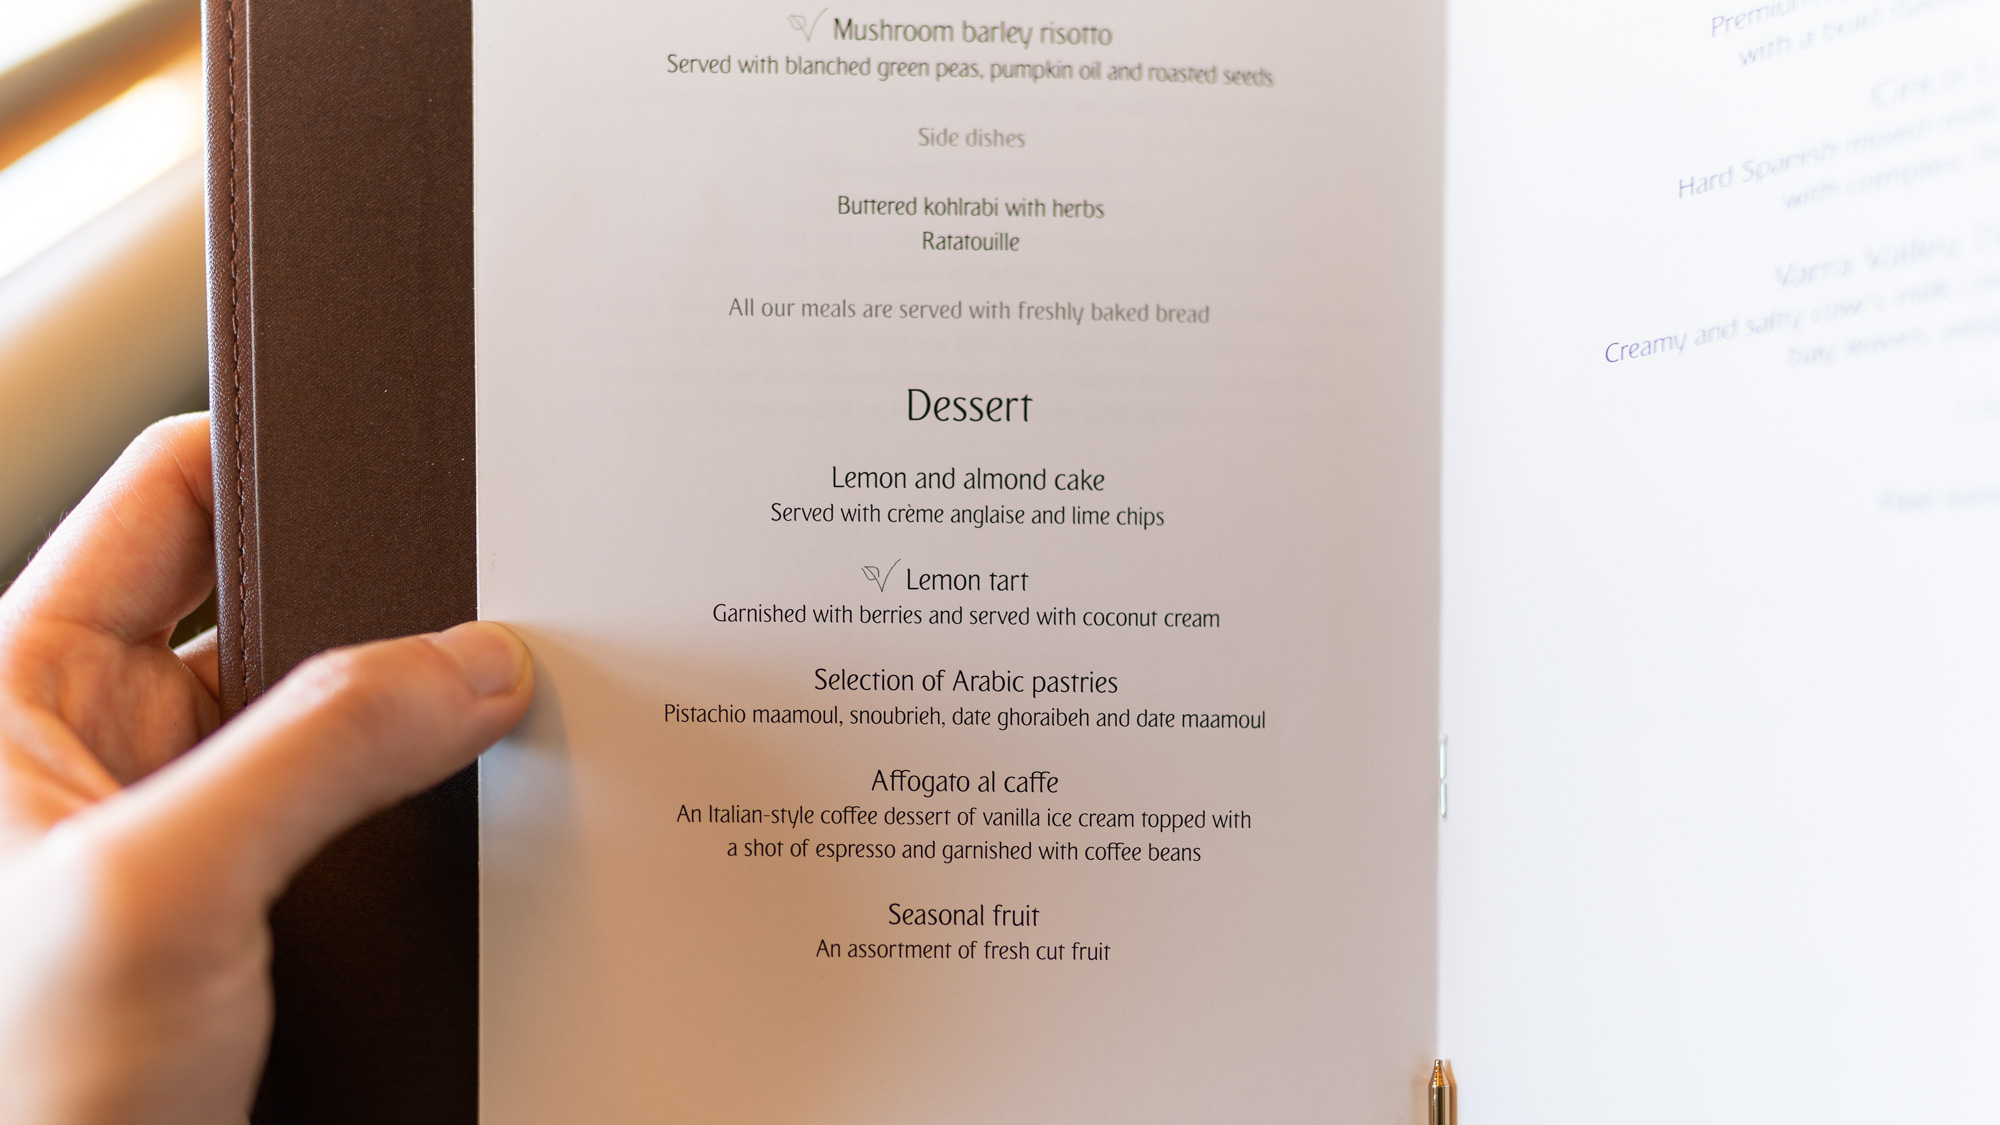 Emirates Boeing 777 First Class dessert menu